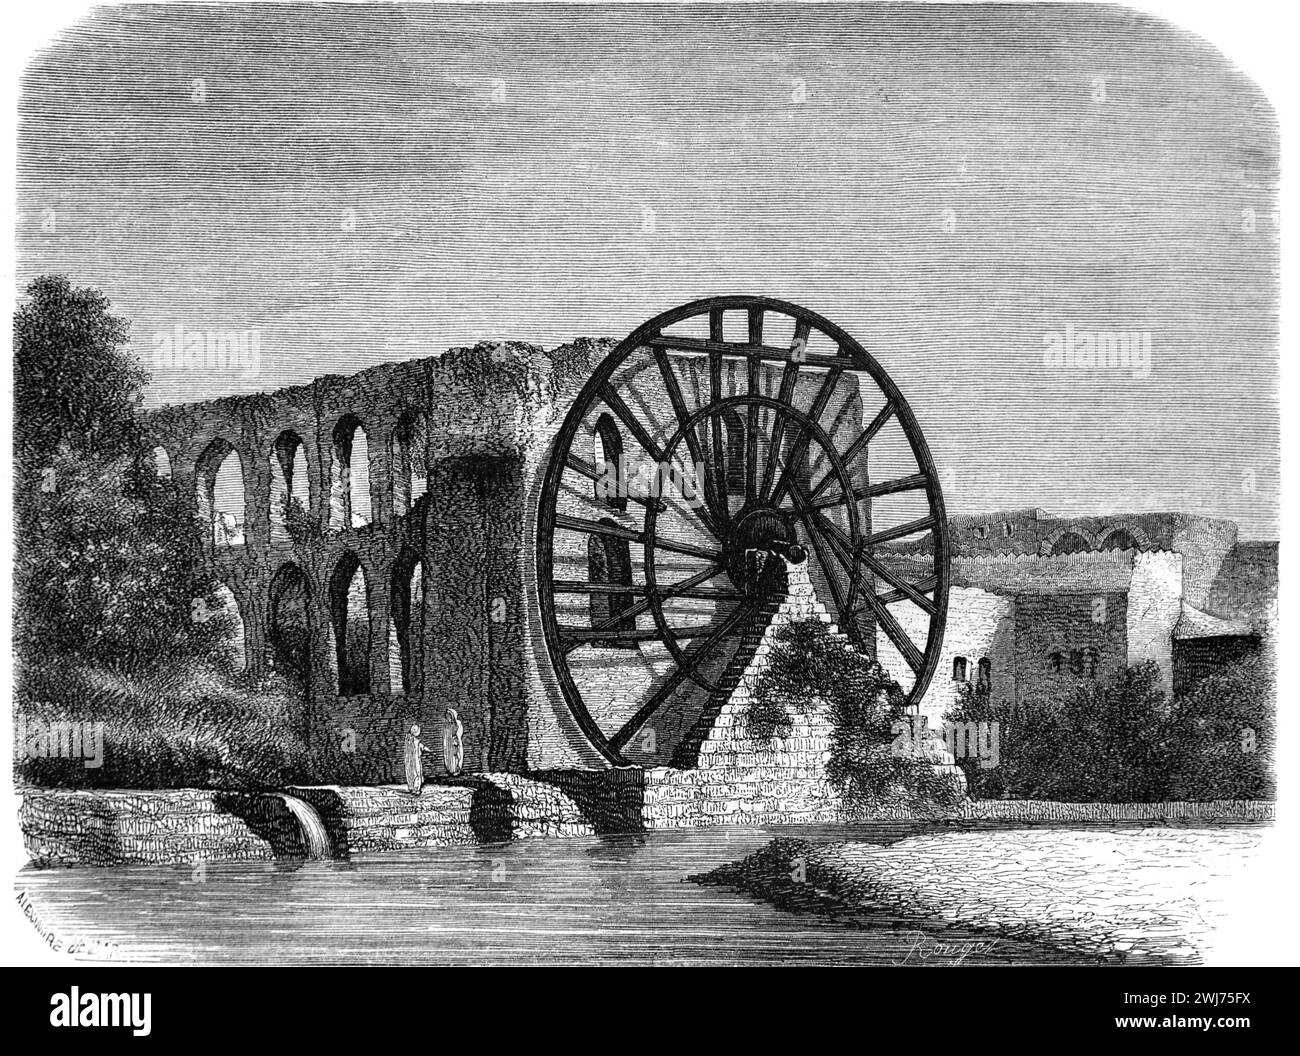 Historisches Riesenrad, Wasserrad oder Wasserrad für Bewässerung auf dem Orontes Fluss Hama Syrien. Vintage oder historische Illustration oder Gravur 1863 Stockfoto